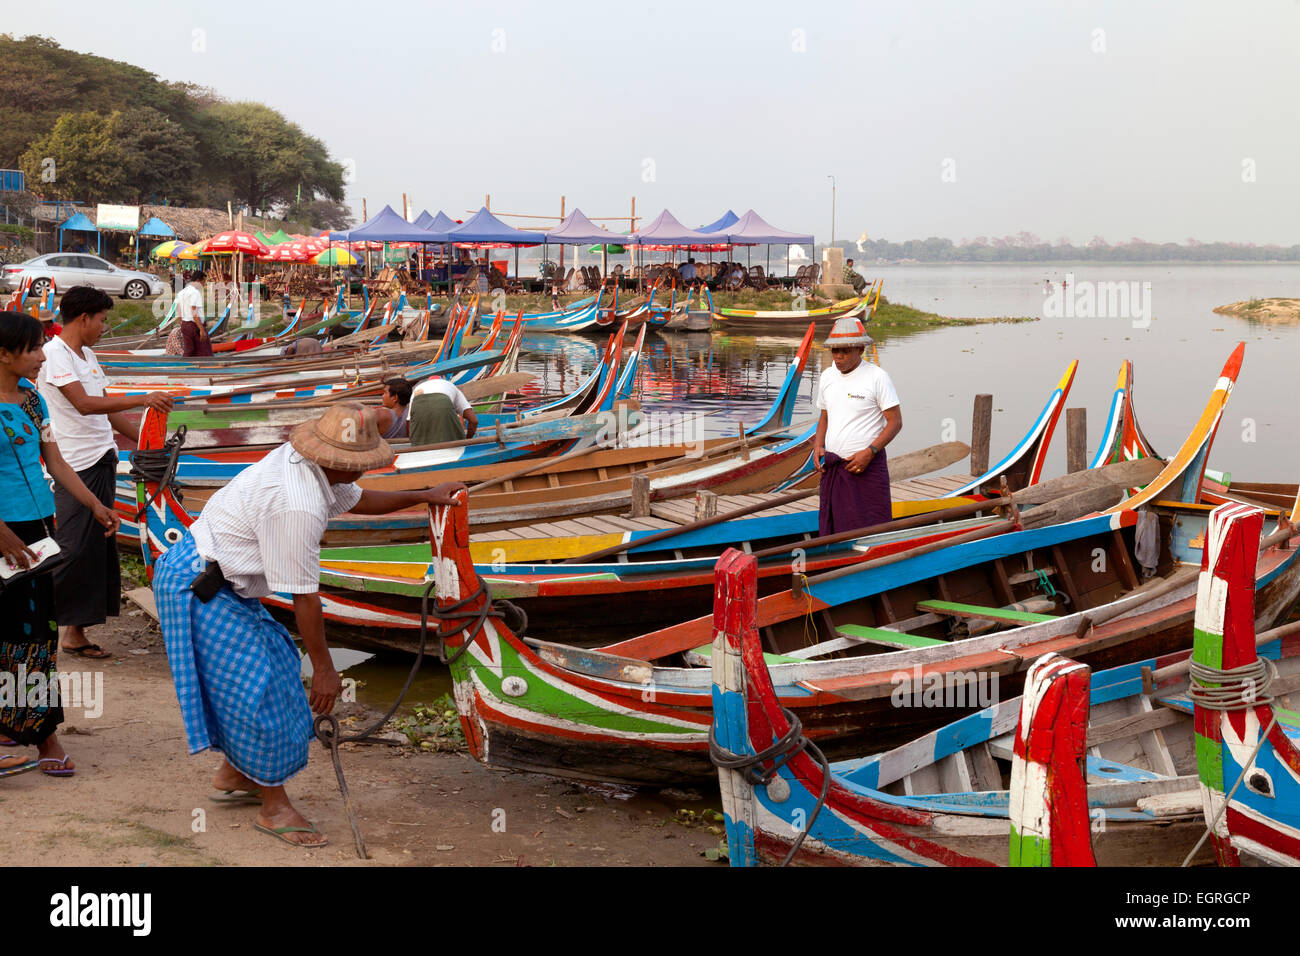 Barche colorate sulla riva del lago Taungthaman, Mandalay Myanmar ( Birmania ), Asia Foto Stock